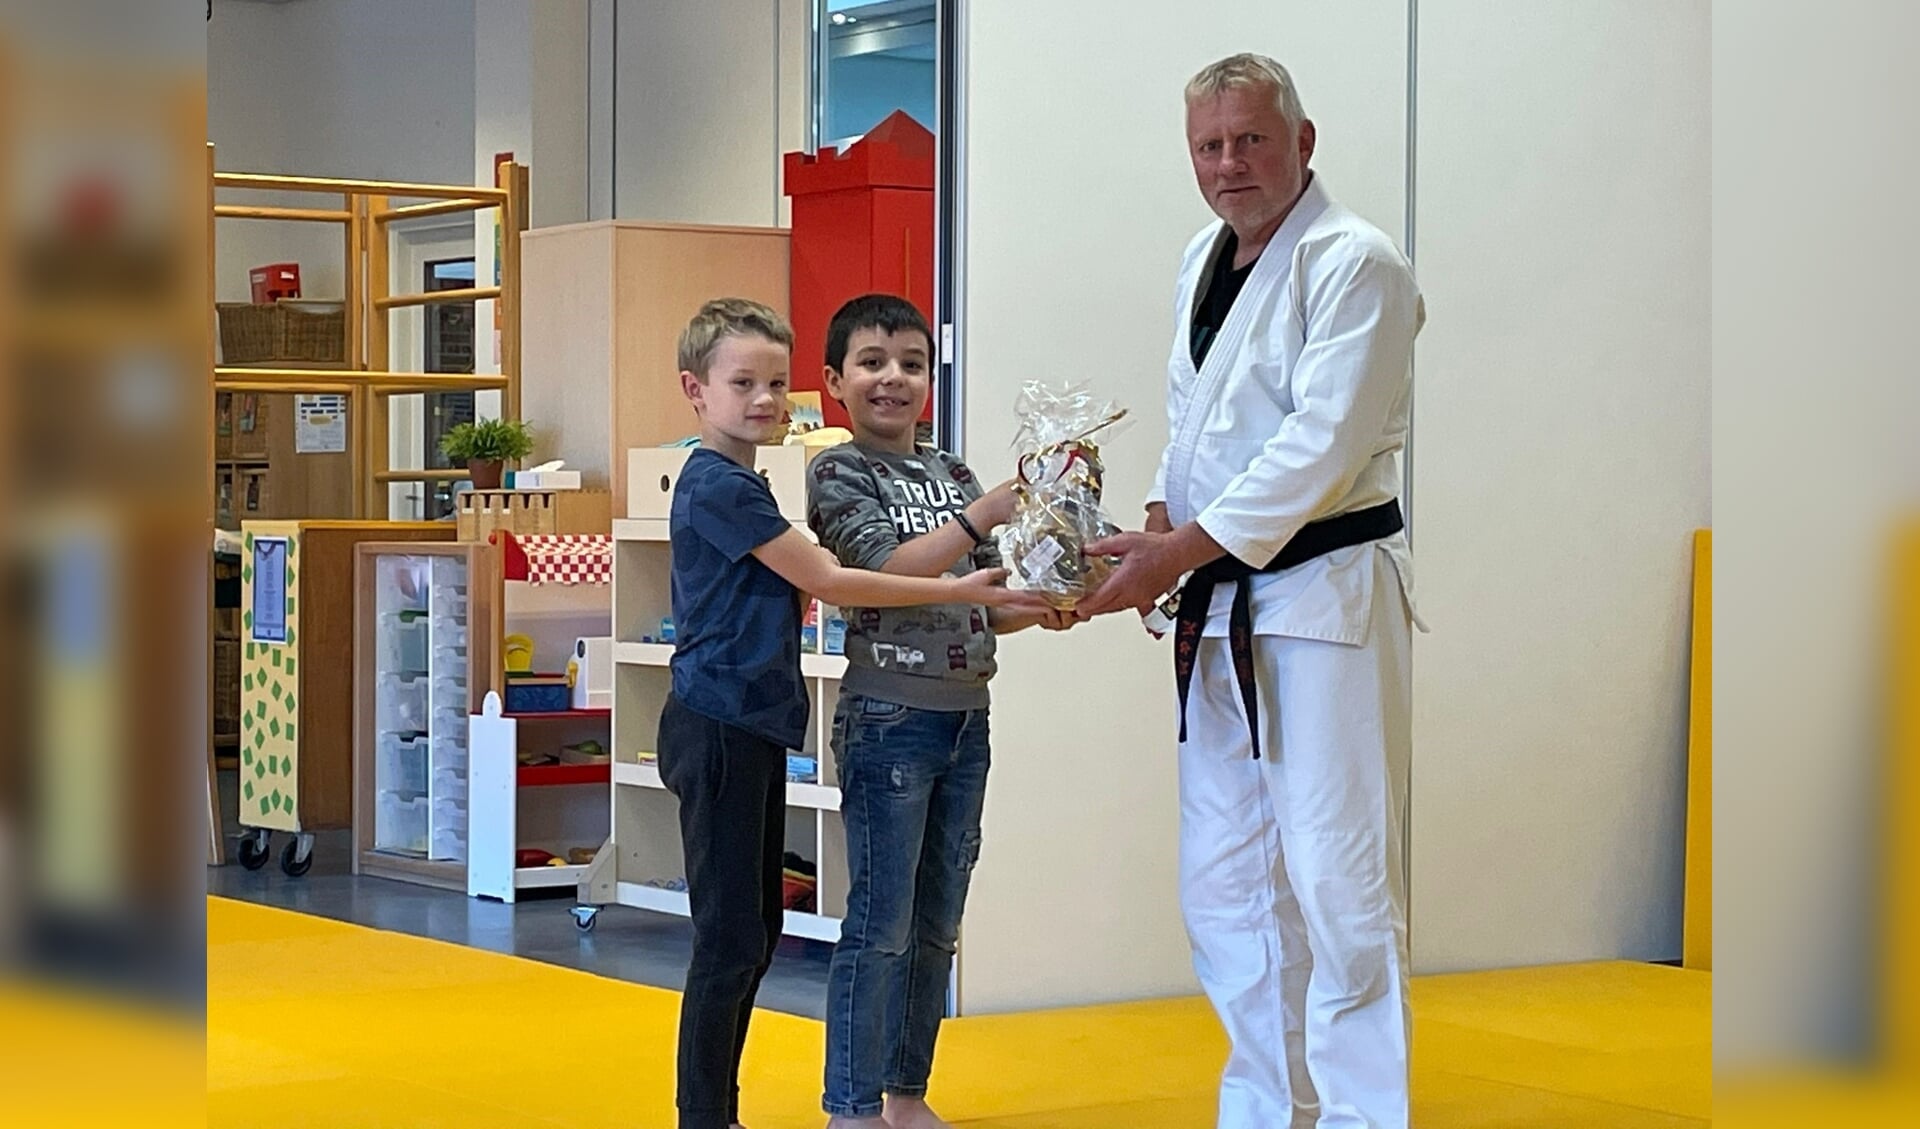 Judoleraar Martin Koudijs deelt lekkers uit aan de kinderen voor hun positieve inzet tijdens de judolessen.